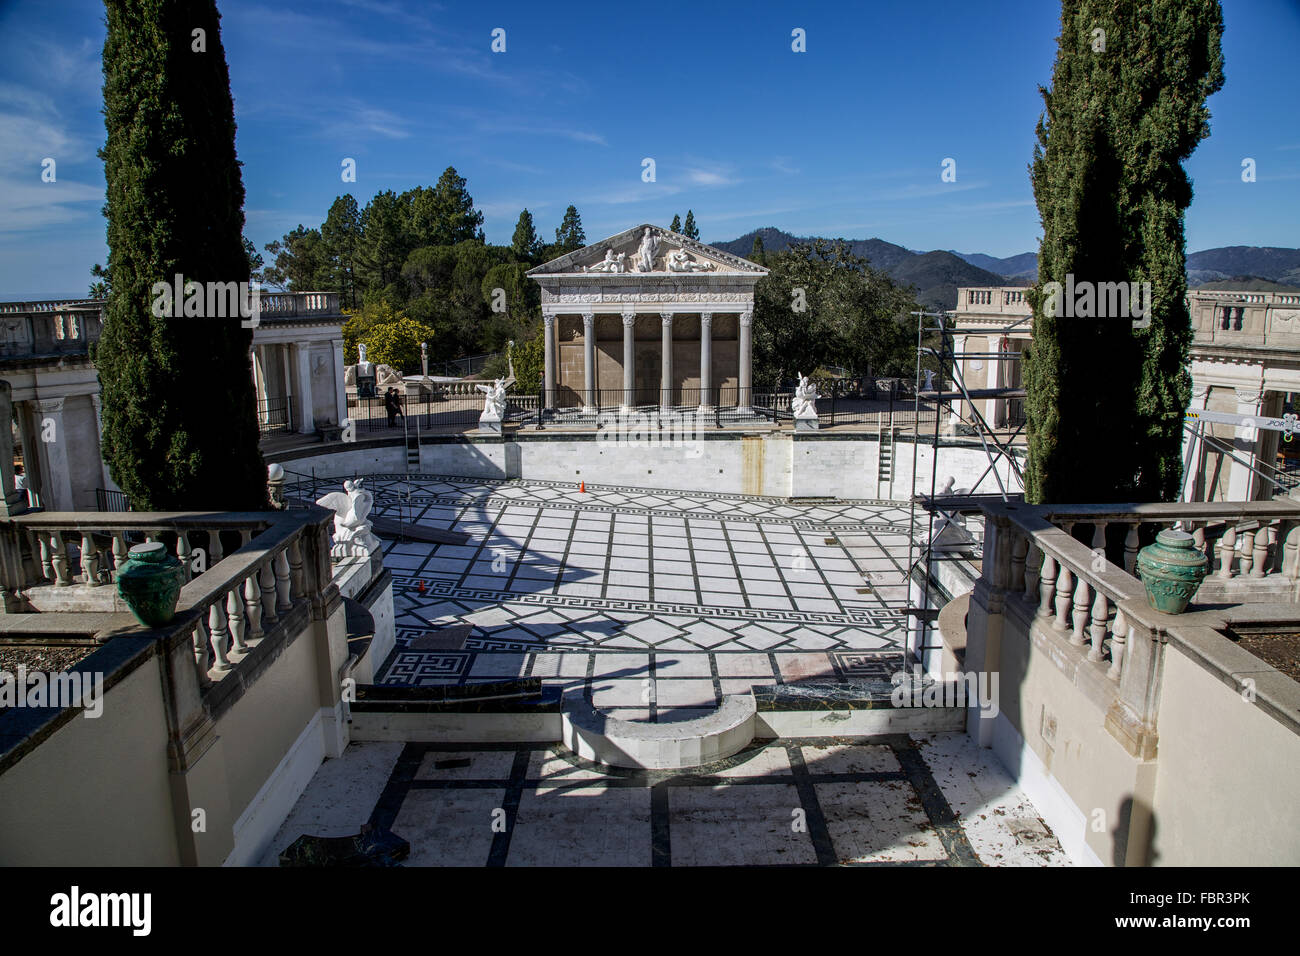 La piscine de style gréco-romain, vide à Hearst Castle en Californie. Banque D'Images